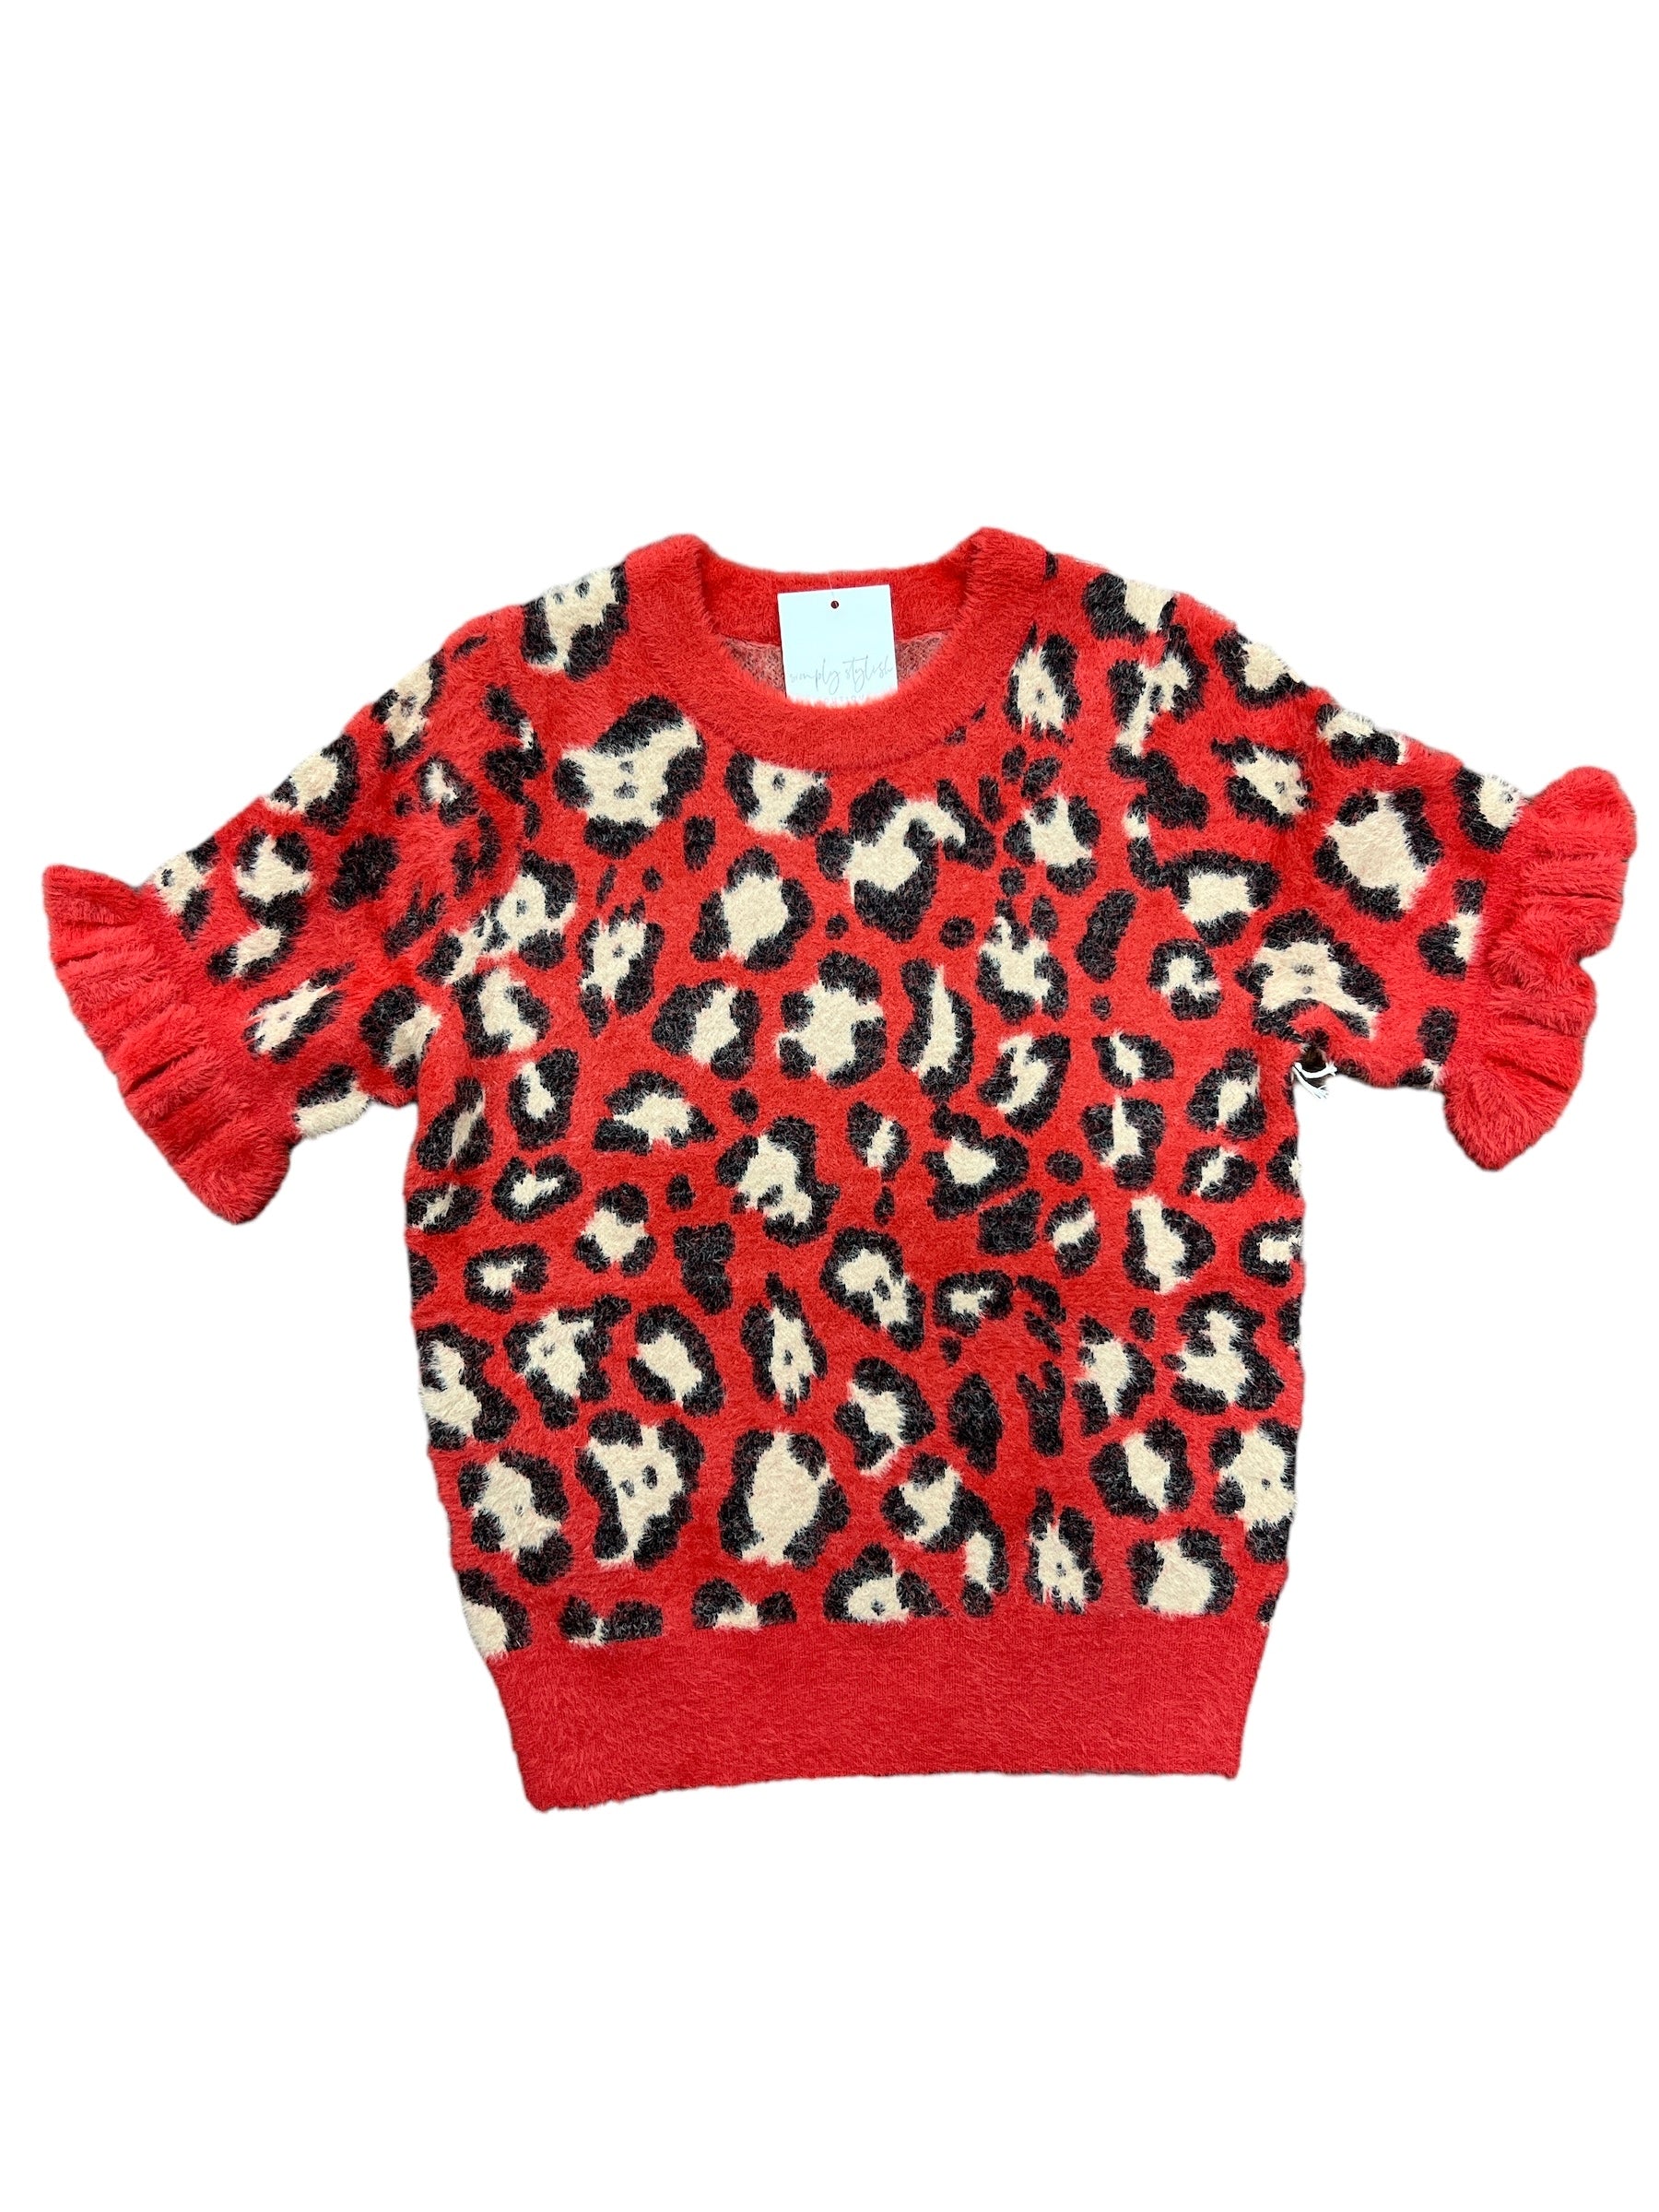 Sezanna Sweater-140 Sweaters, Cardigans & Sweatshirts-Simply Stylish Boutique-Simply Stylish Boutique | Women’s & Kid’s Fashion | Paducah, KY